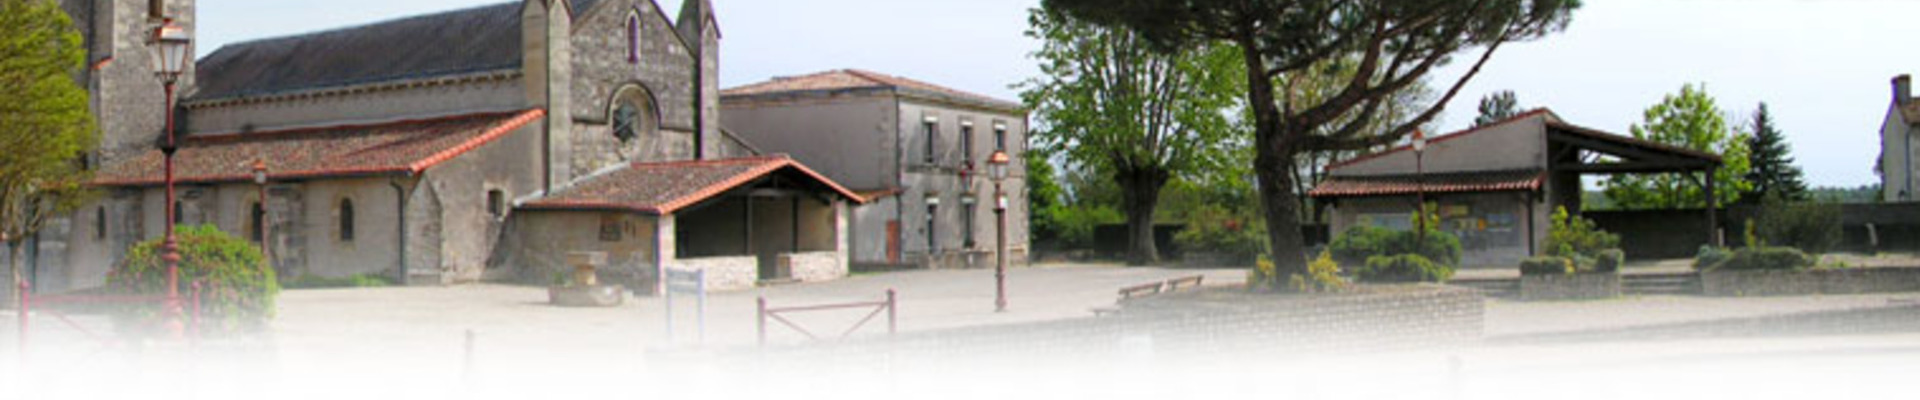 Commune de Saivres - Site officiel